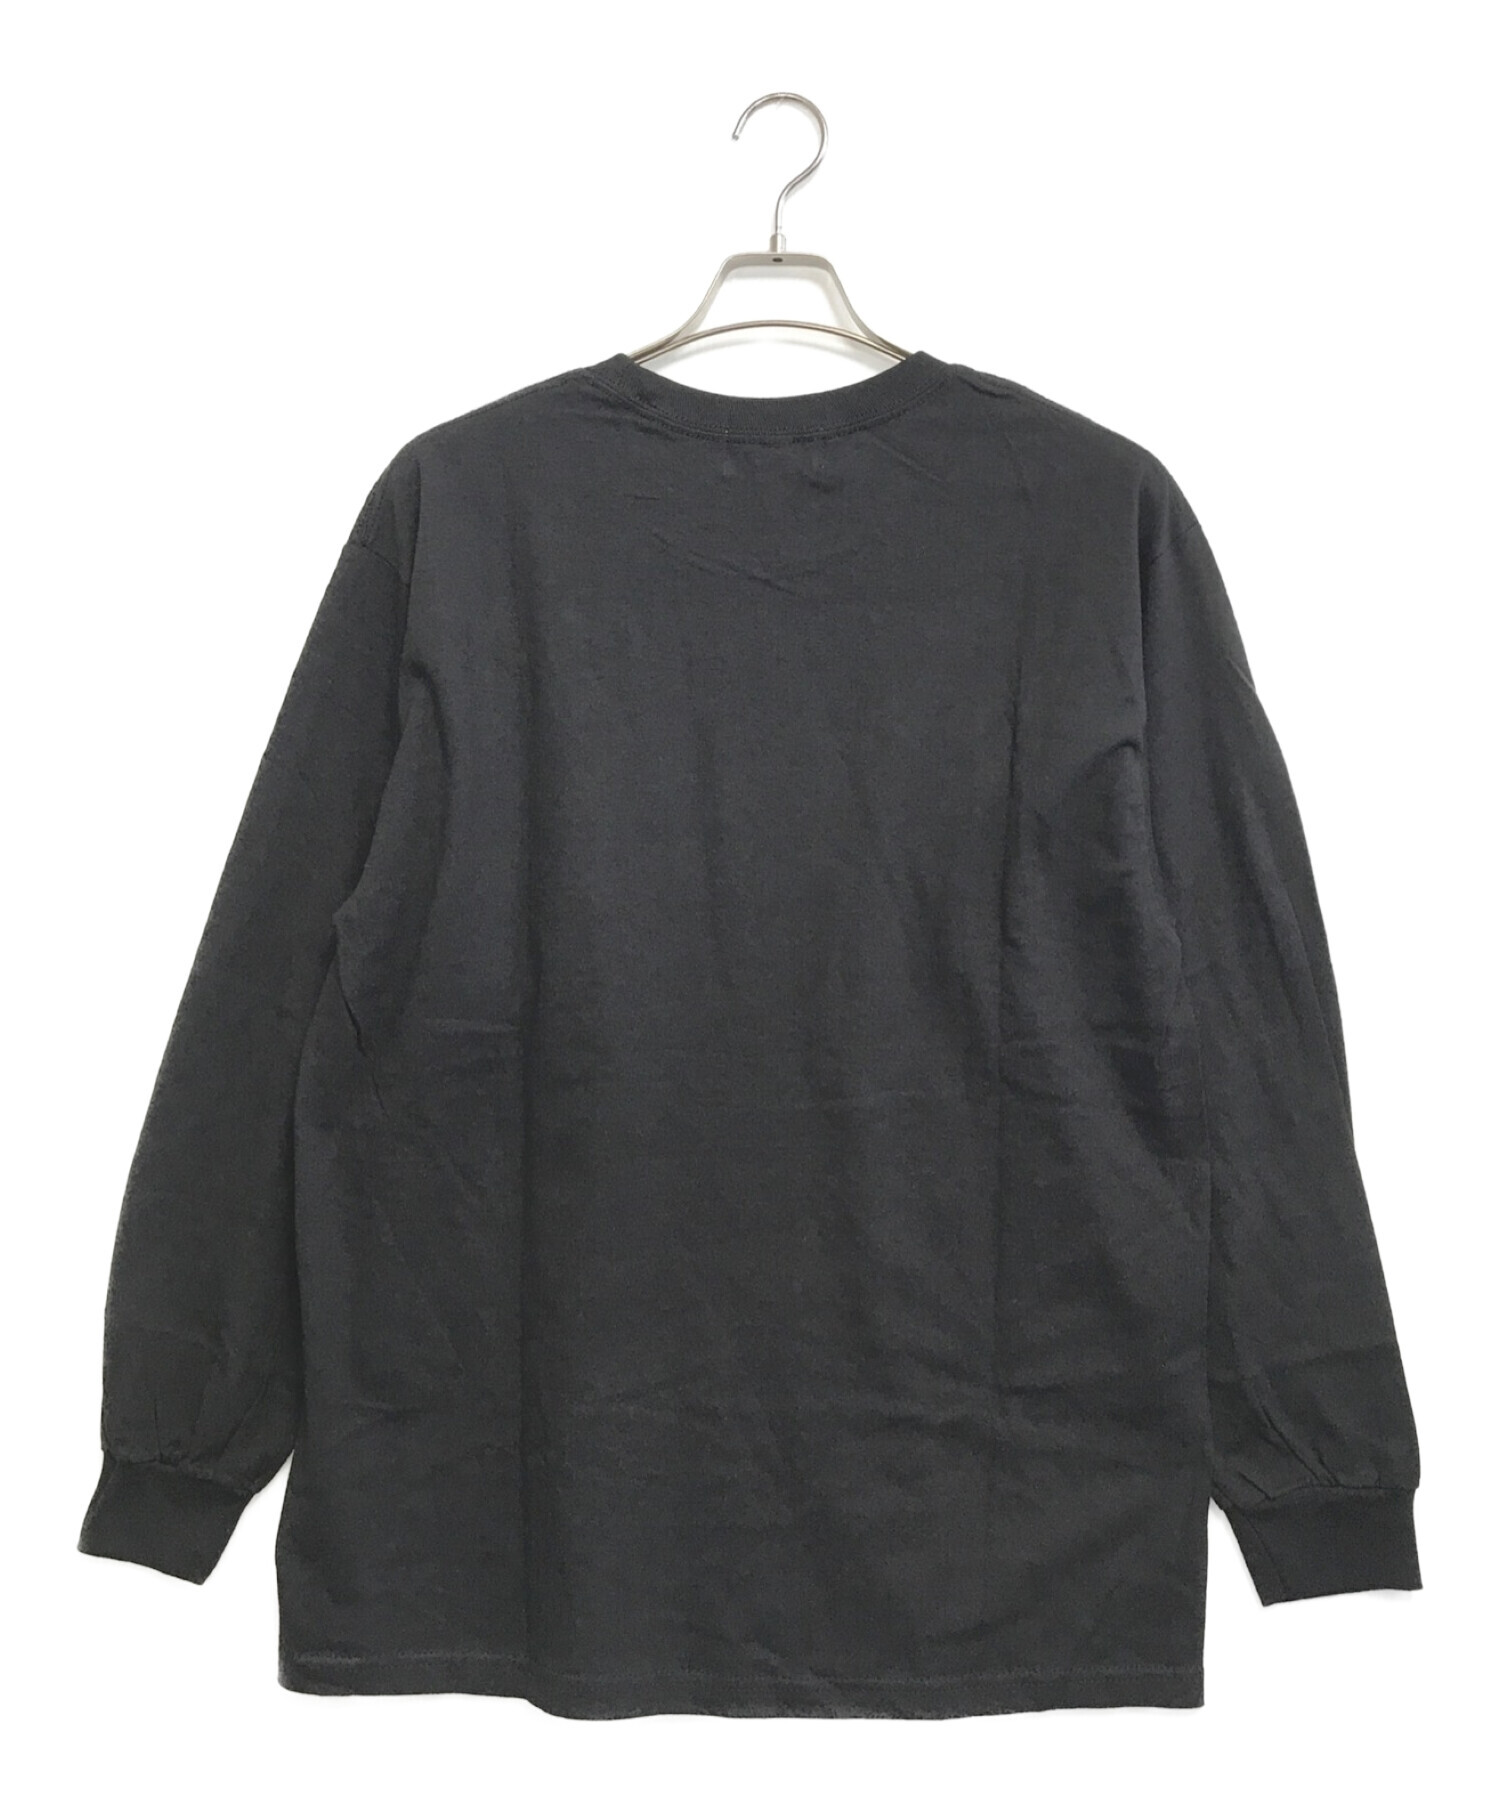 flagstuff (フラグスタフ) プリントTシャツ ブラック サイズ:L 未使用品